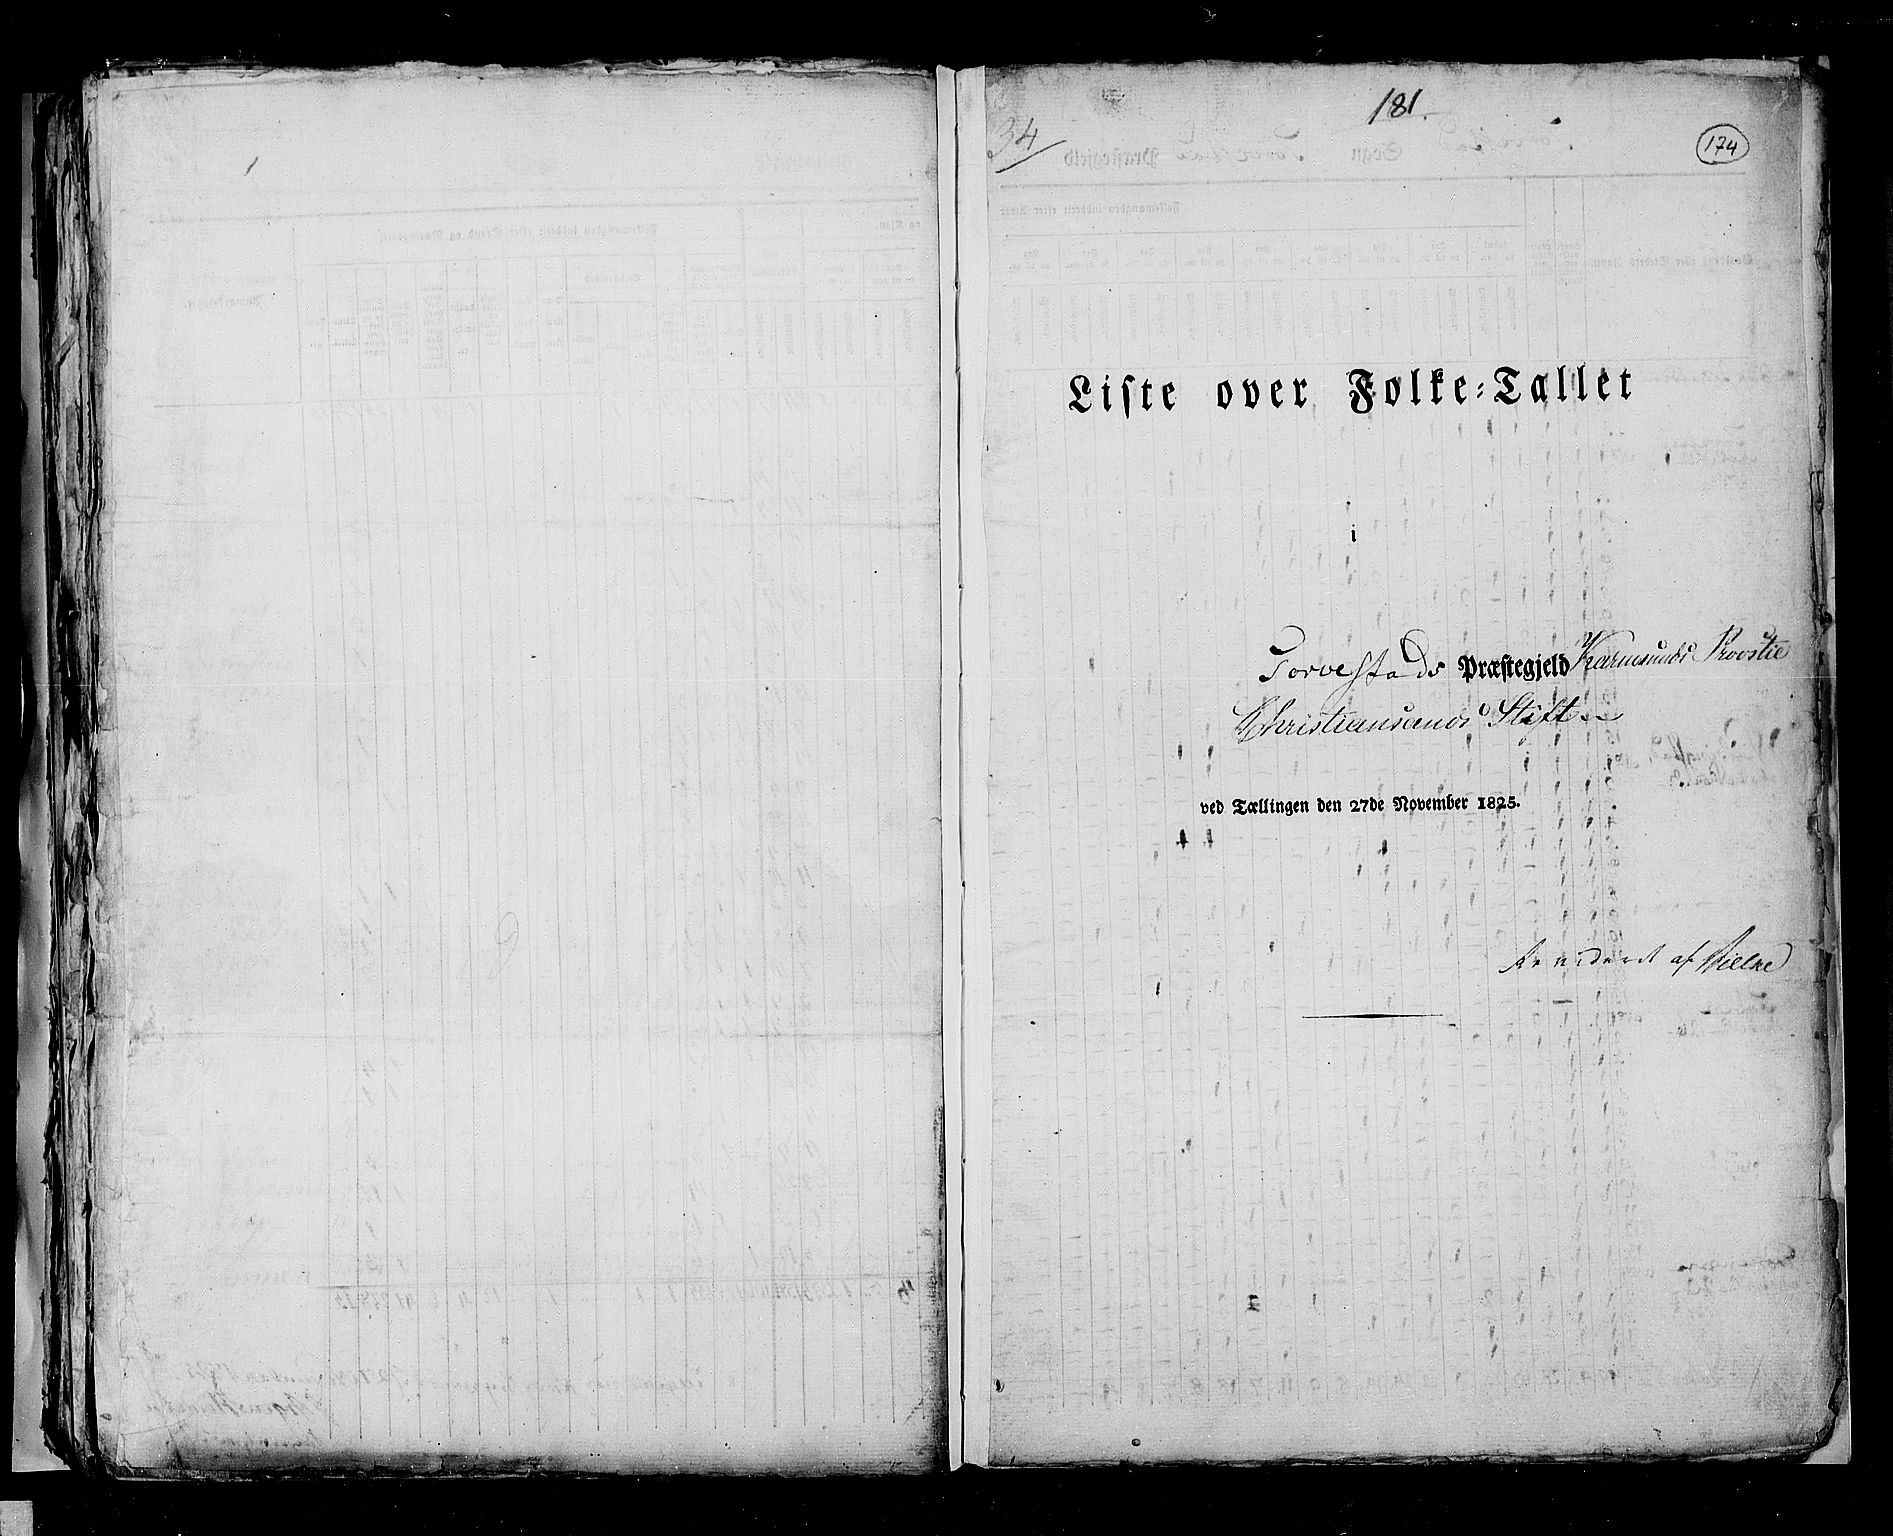 RA, Folketellingen 1825, bind 12: Stavanger amt, 1825, s. 174